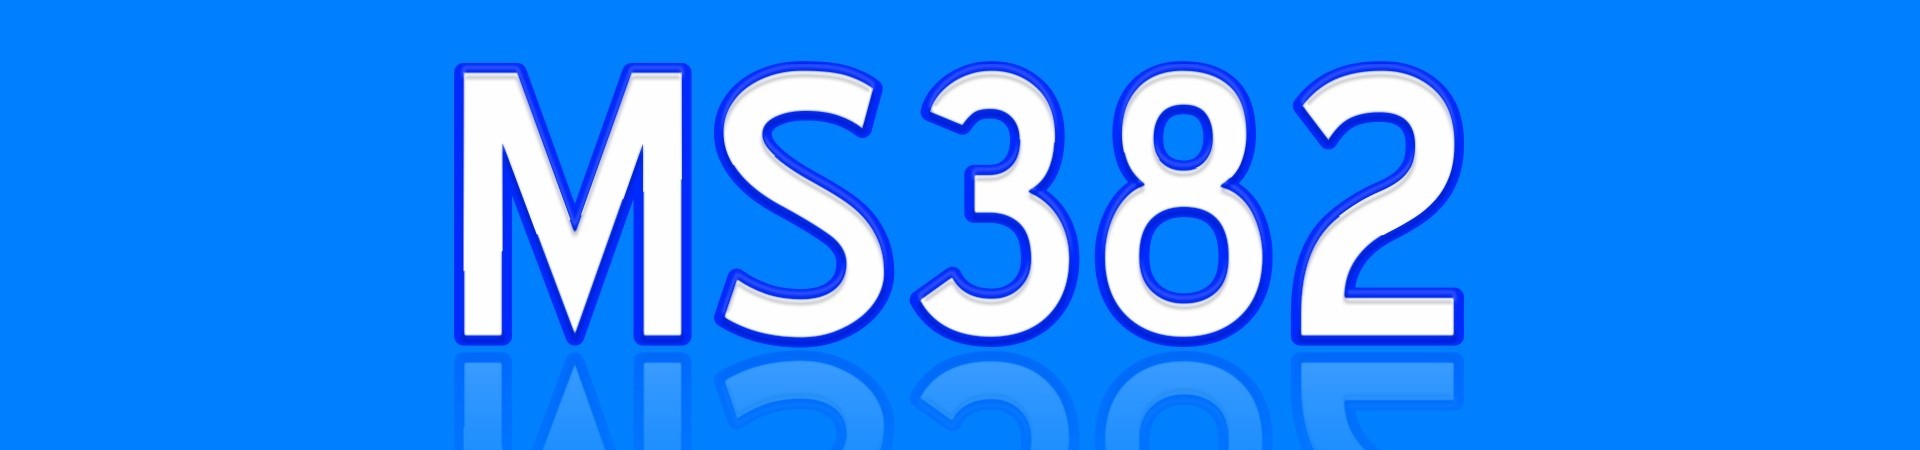 MS382